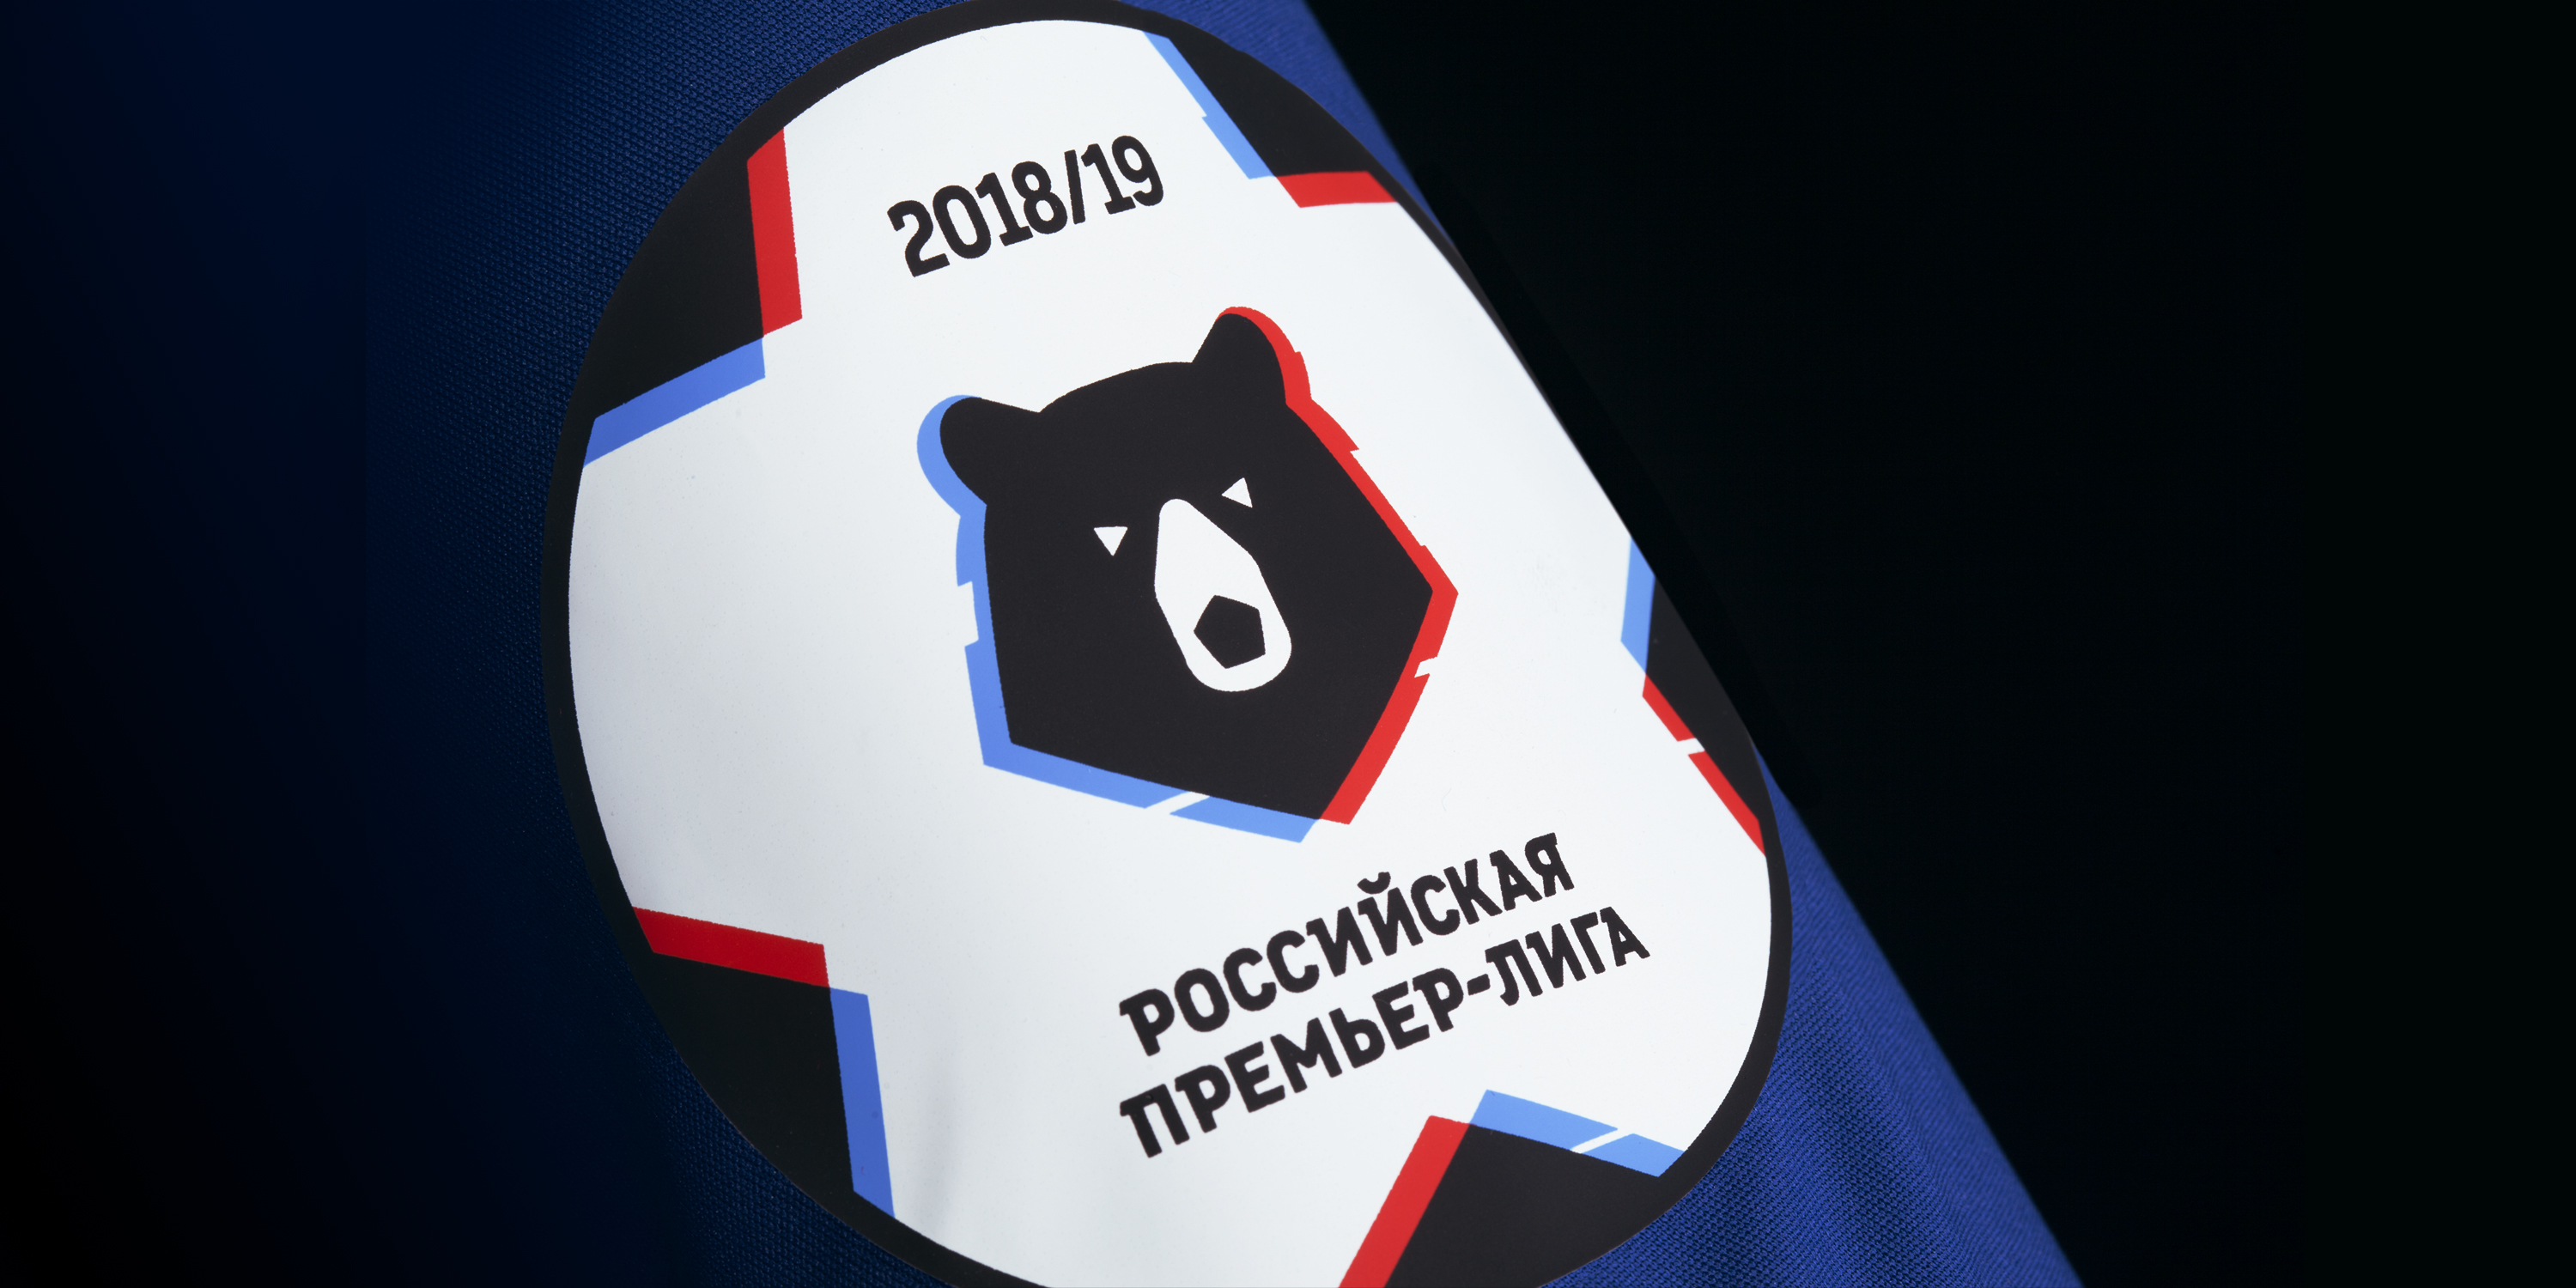 Russian premier league